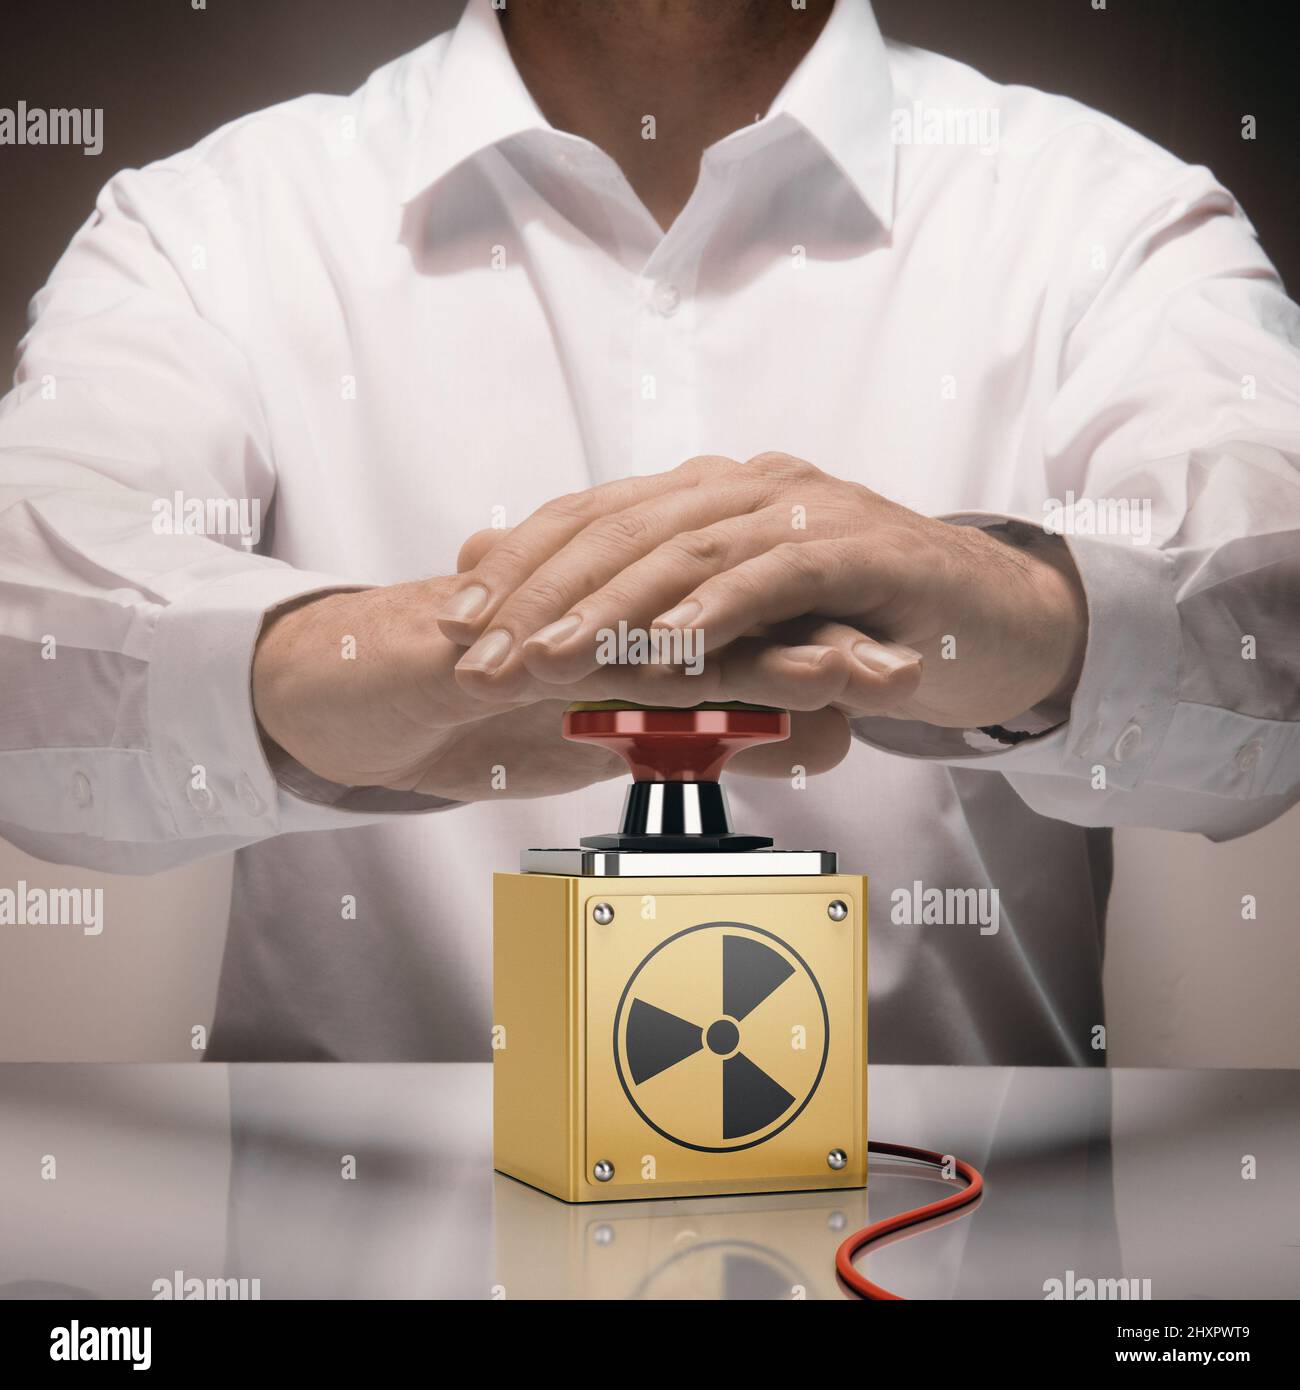 Hombre pulsando un botón de nuke. Concepto de guerra nuclear. Imagen compuesta entre una fotografía de mano y un fondo de 3D. Foto de stock